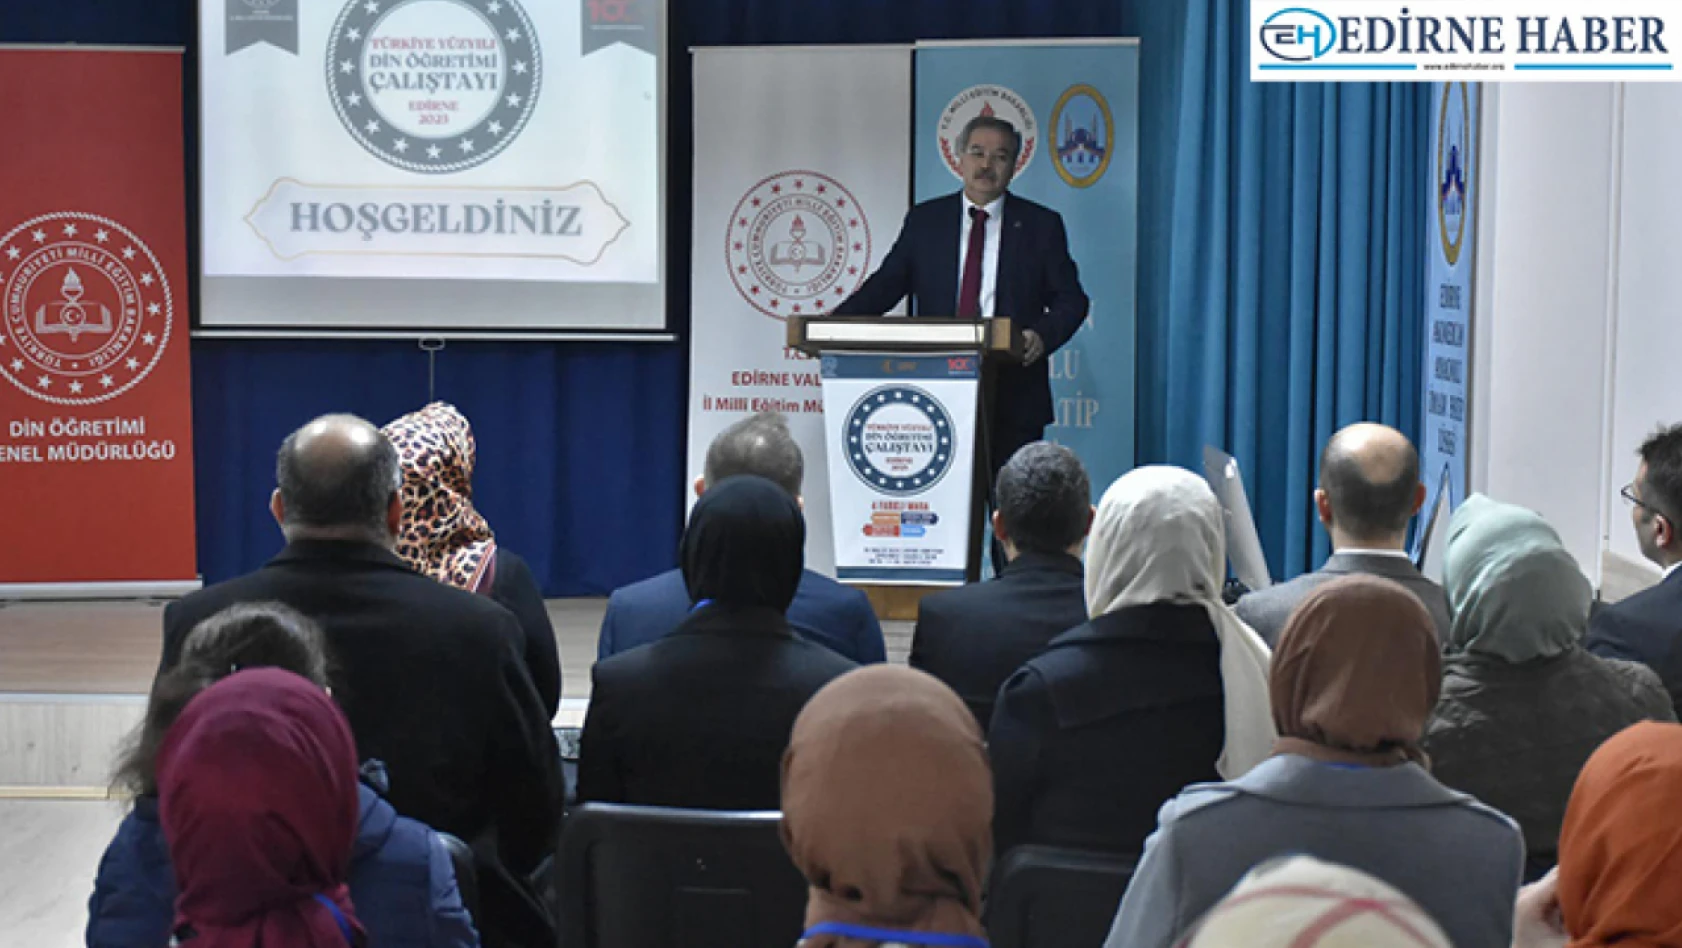 Edirne'de Türkiye Yüzyılı Din Öğretimi Çalıştayı gerçekleştirildi